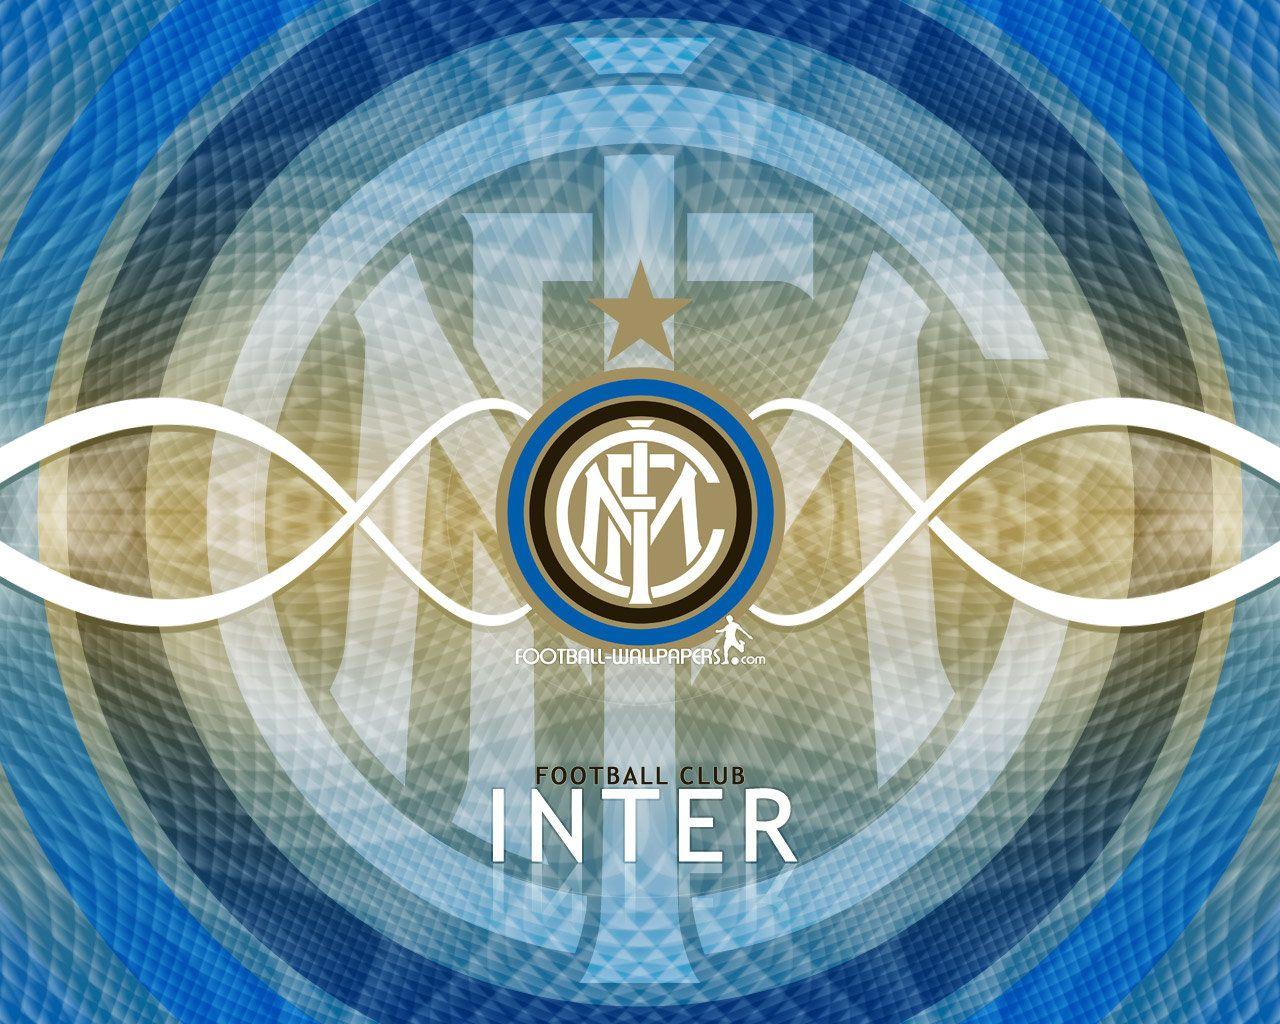 Magnificent FC Internazionale Milano Wallpaper. Full HD Picture